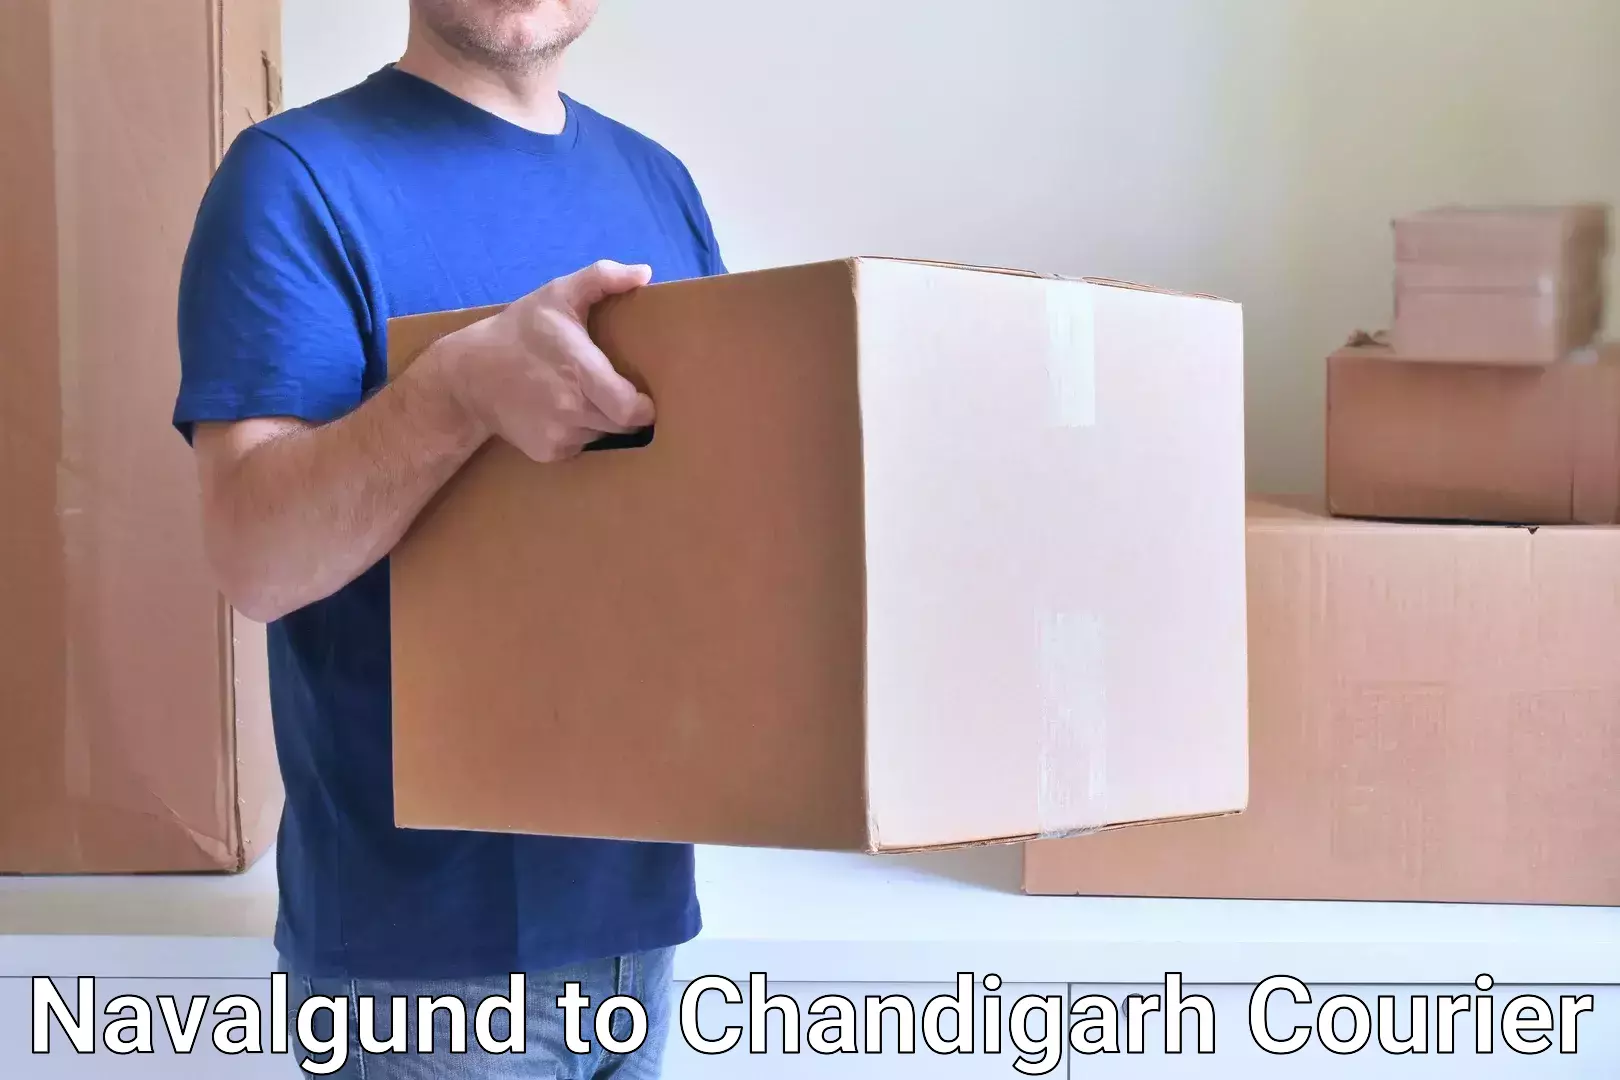 Fast delivery service Navalgund to Chandigarh